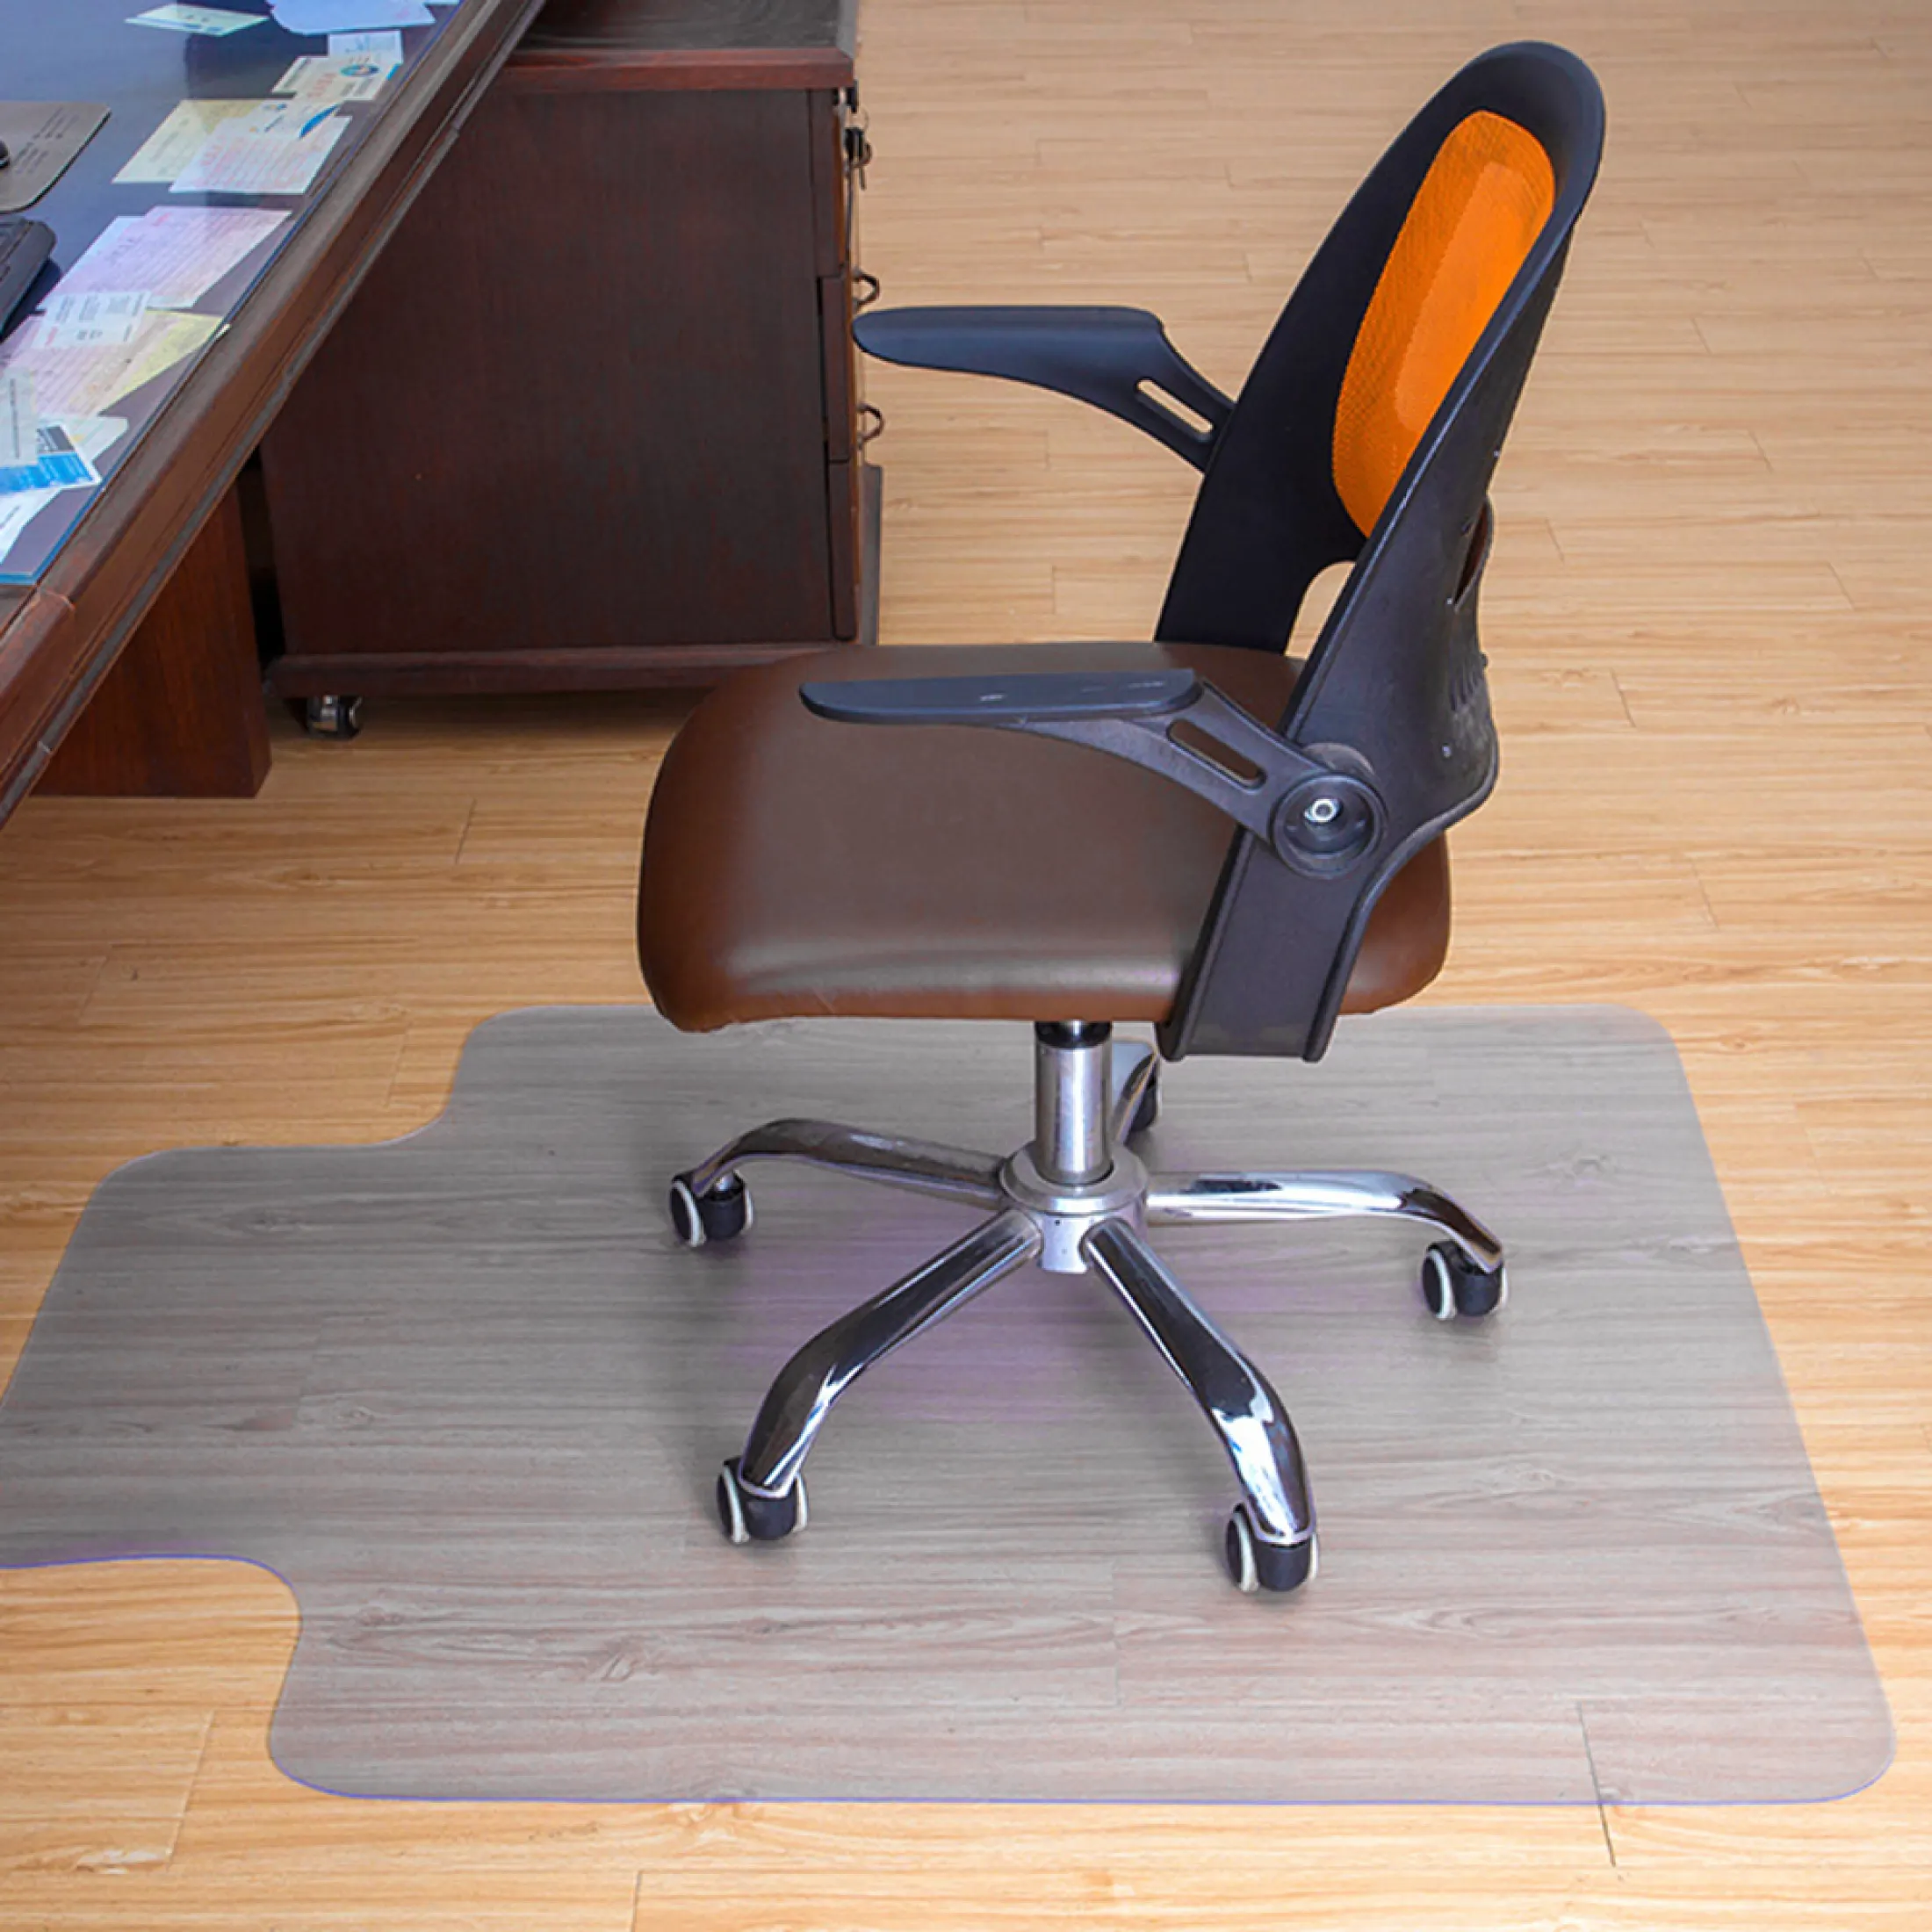 Rego 60 120cm Office Chair Mat For, Non Slip Chair Mat For Hardwood Floors